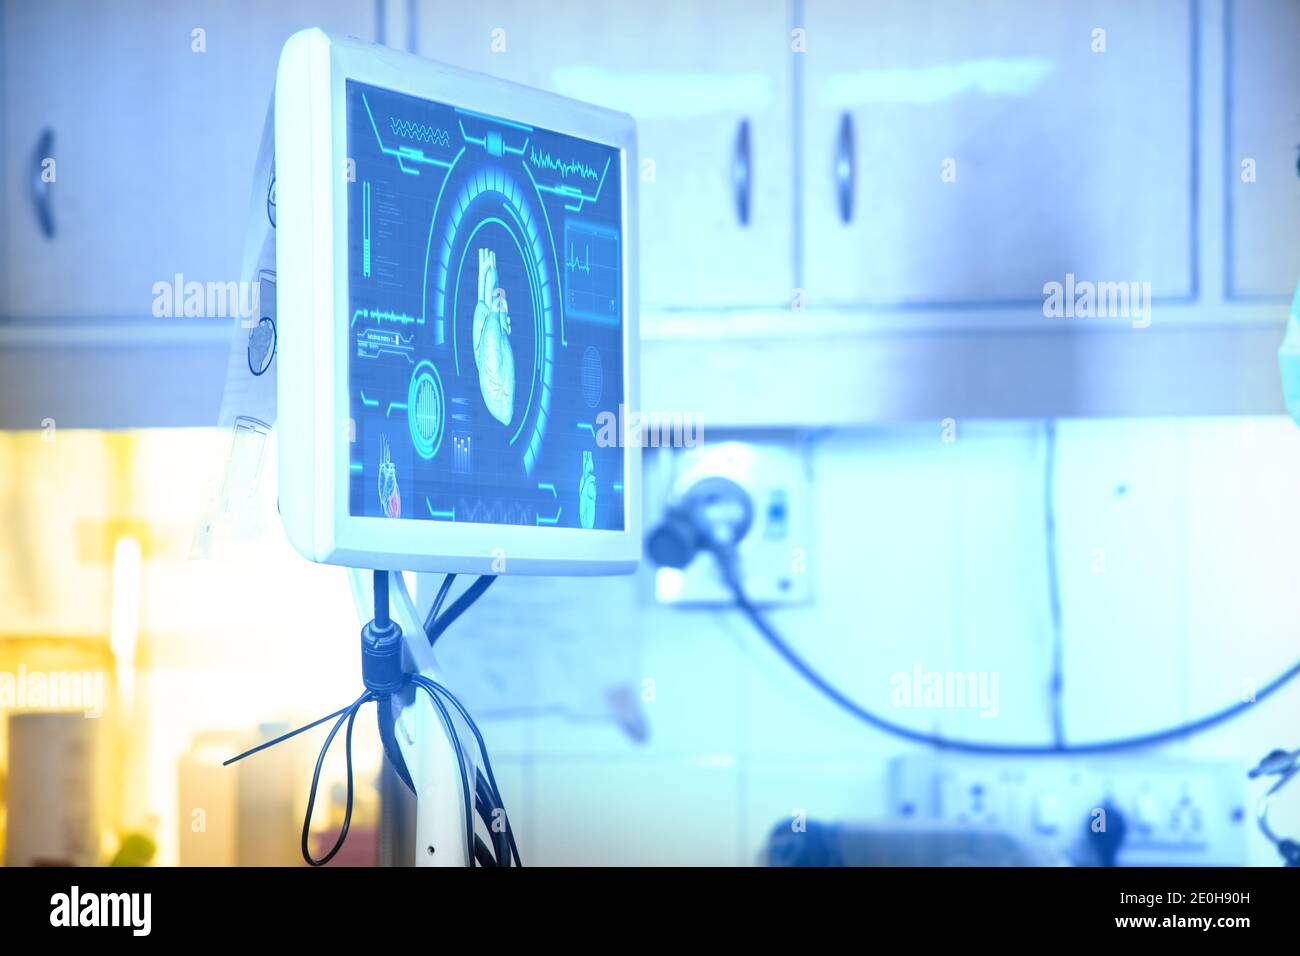 Computerbildschirm der Scanmaschine im Krankenhaus. Moderne medizinische Ausrüstung. Digitale Diagnosetechnik, Herzkrankheitskonzept, Hintergrund, Polizist Stockfoto